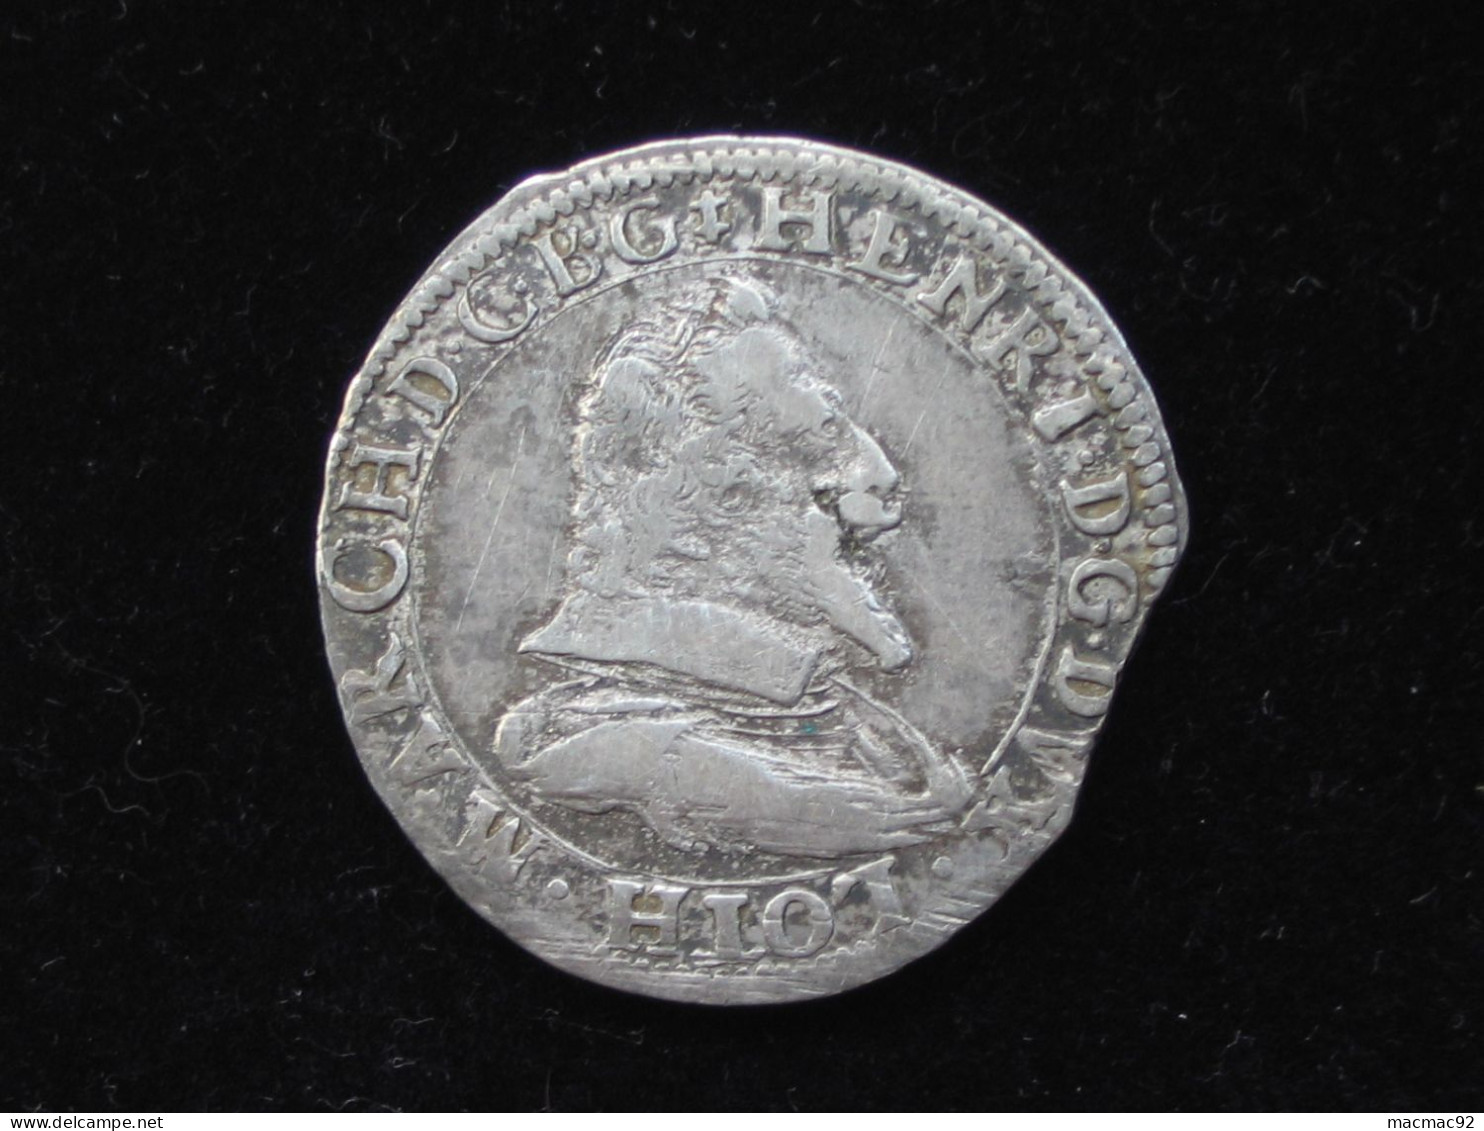 HENRI II - TESTON D'HENRI II - Monnaie De Lorraine, Duché De Lorraine  **** EN ACHAT IMMEDIAT **** - 1547-1559 Hendrik II